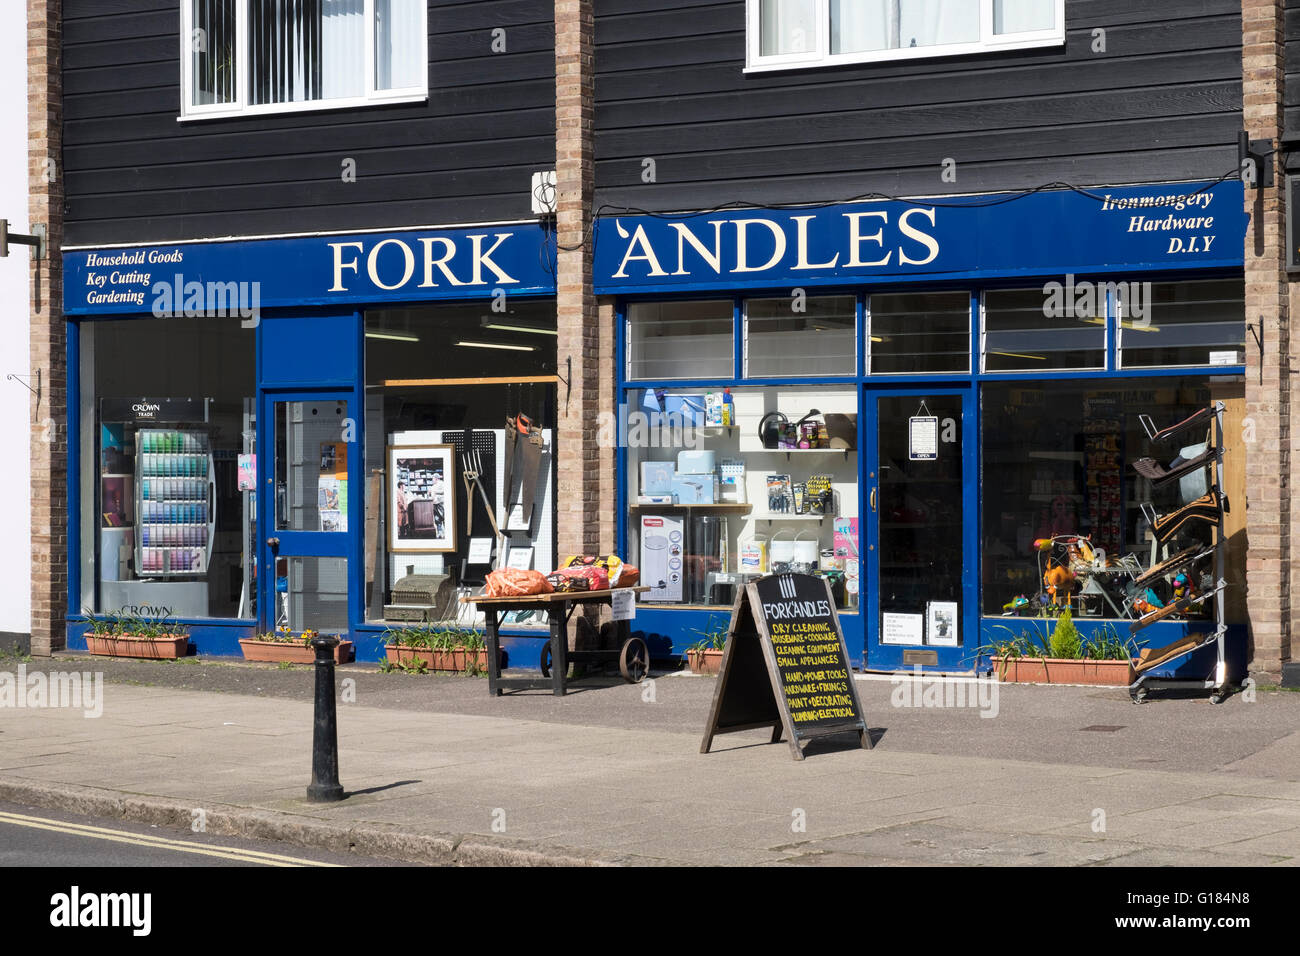 Andles fourche serrurerie boutique, en hommage aux deux Ronnies croquis des années 1970 tv show, Coggeshall, Essex, Royaume-Uni. Banque D'Images